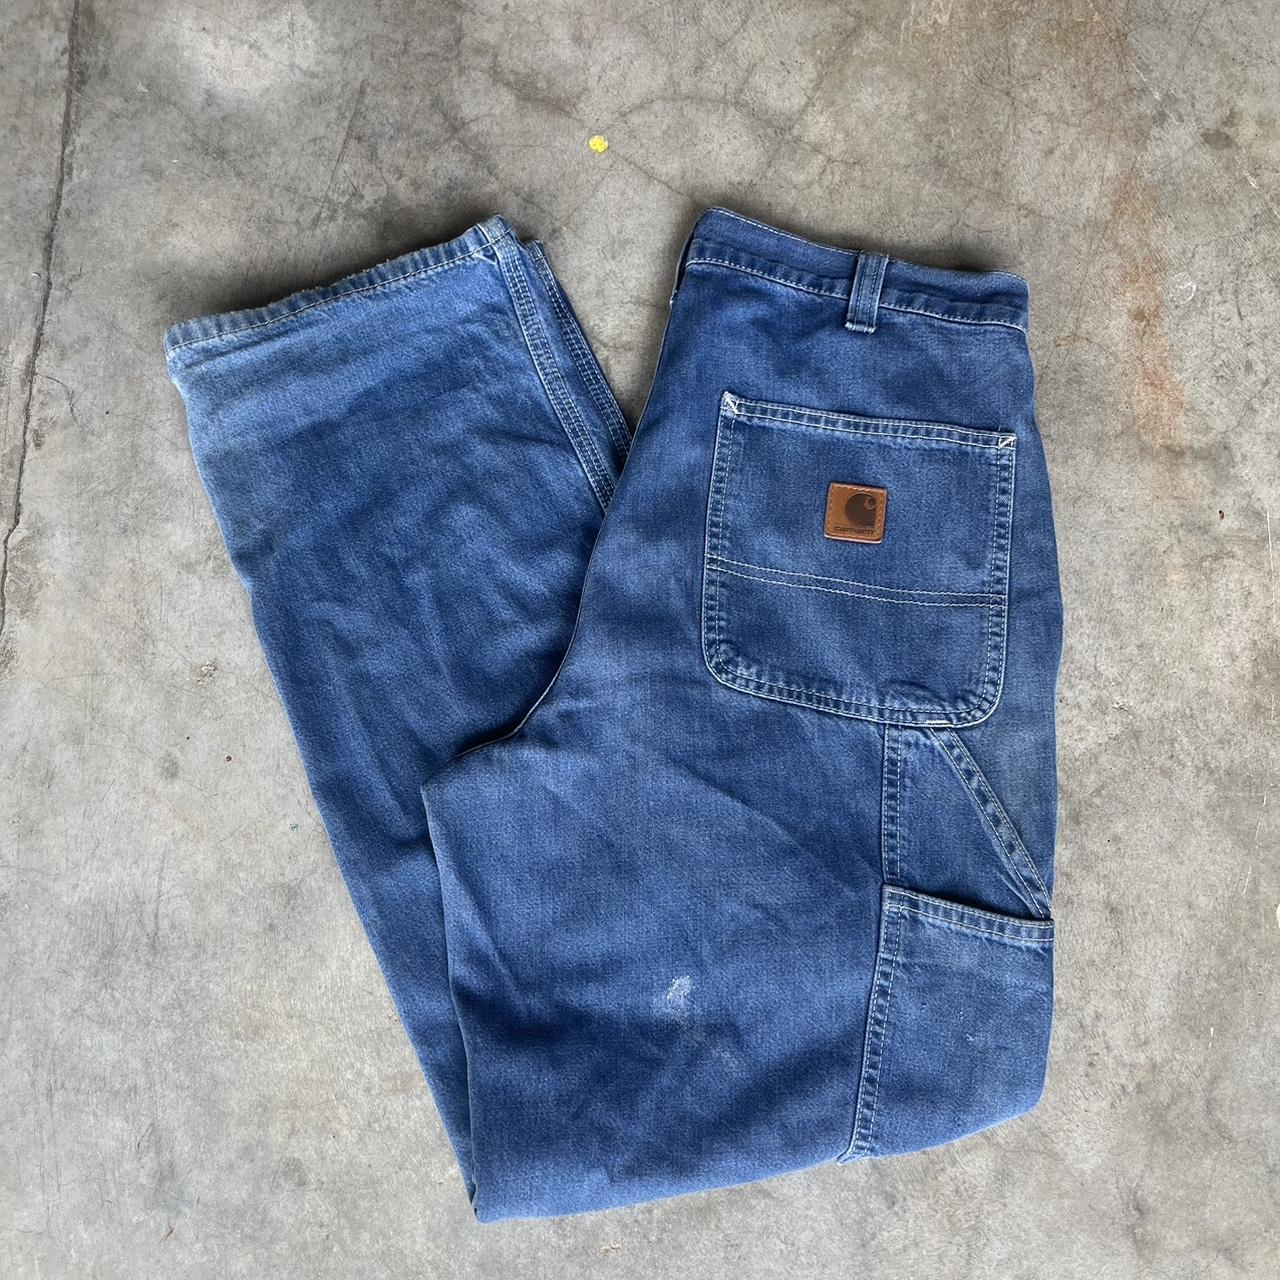 Carhartt carpenter jeans 32 X 30 - Depop